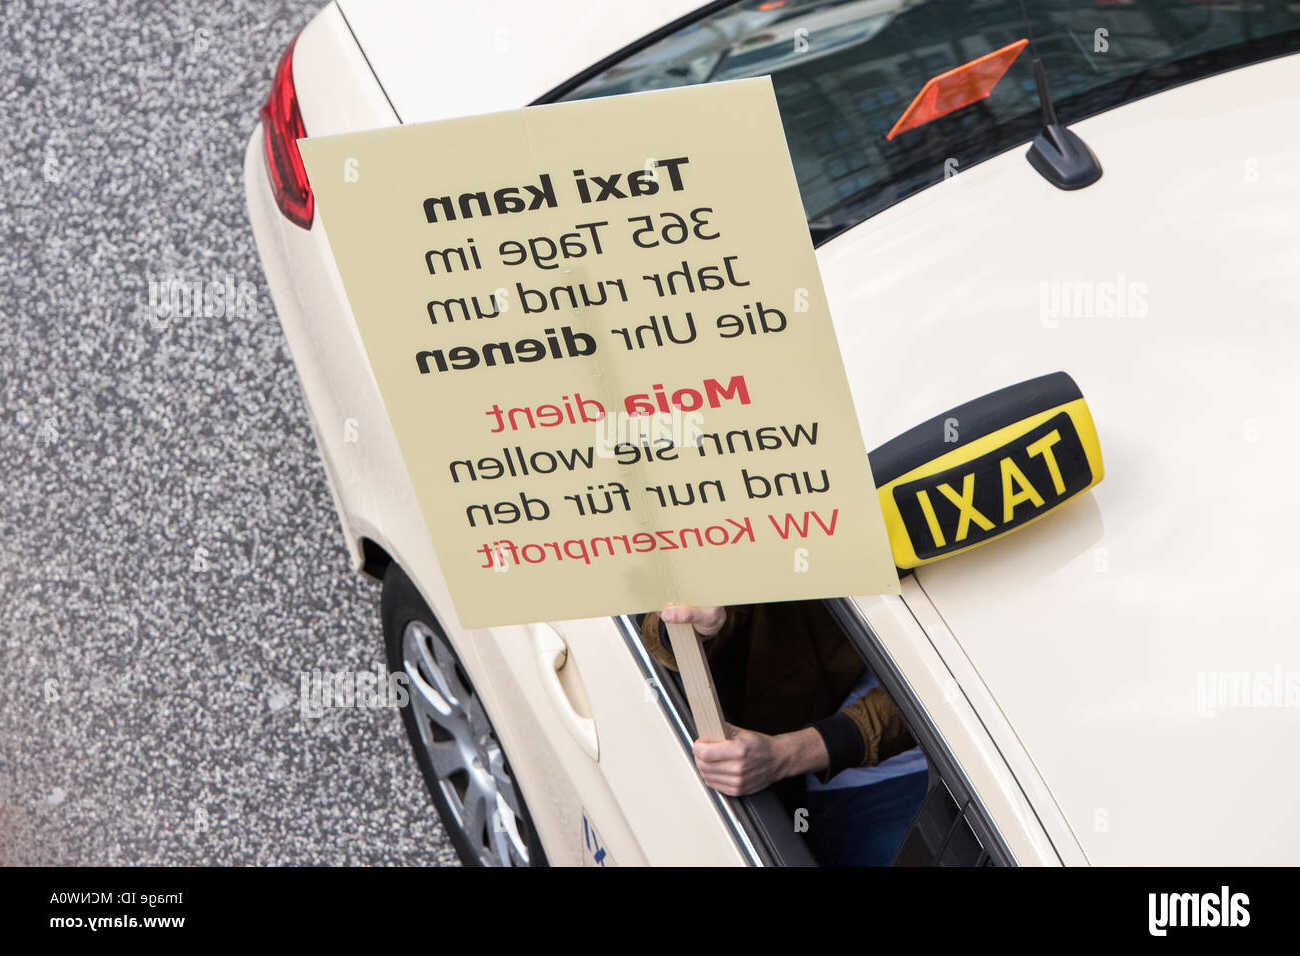 Est-ce rentable d'être taxi ?